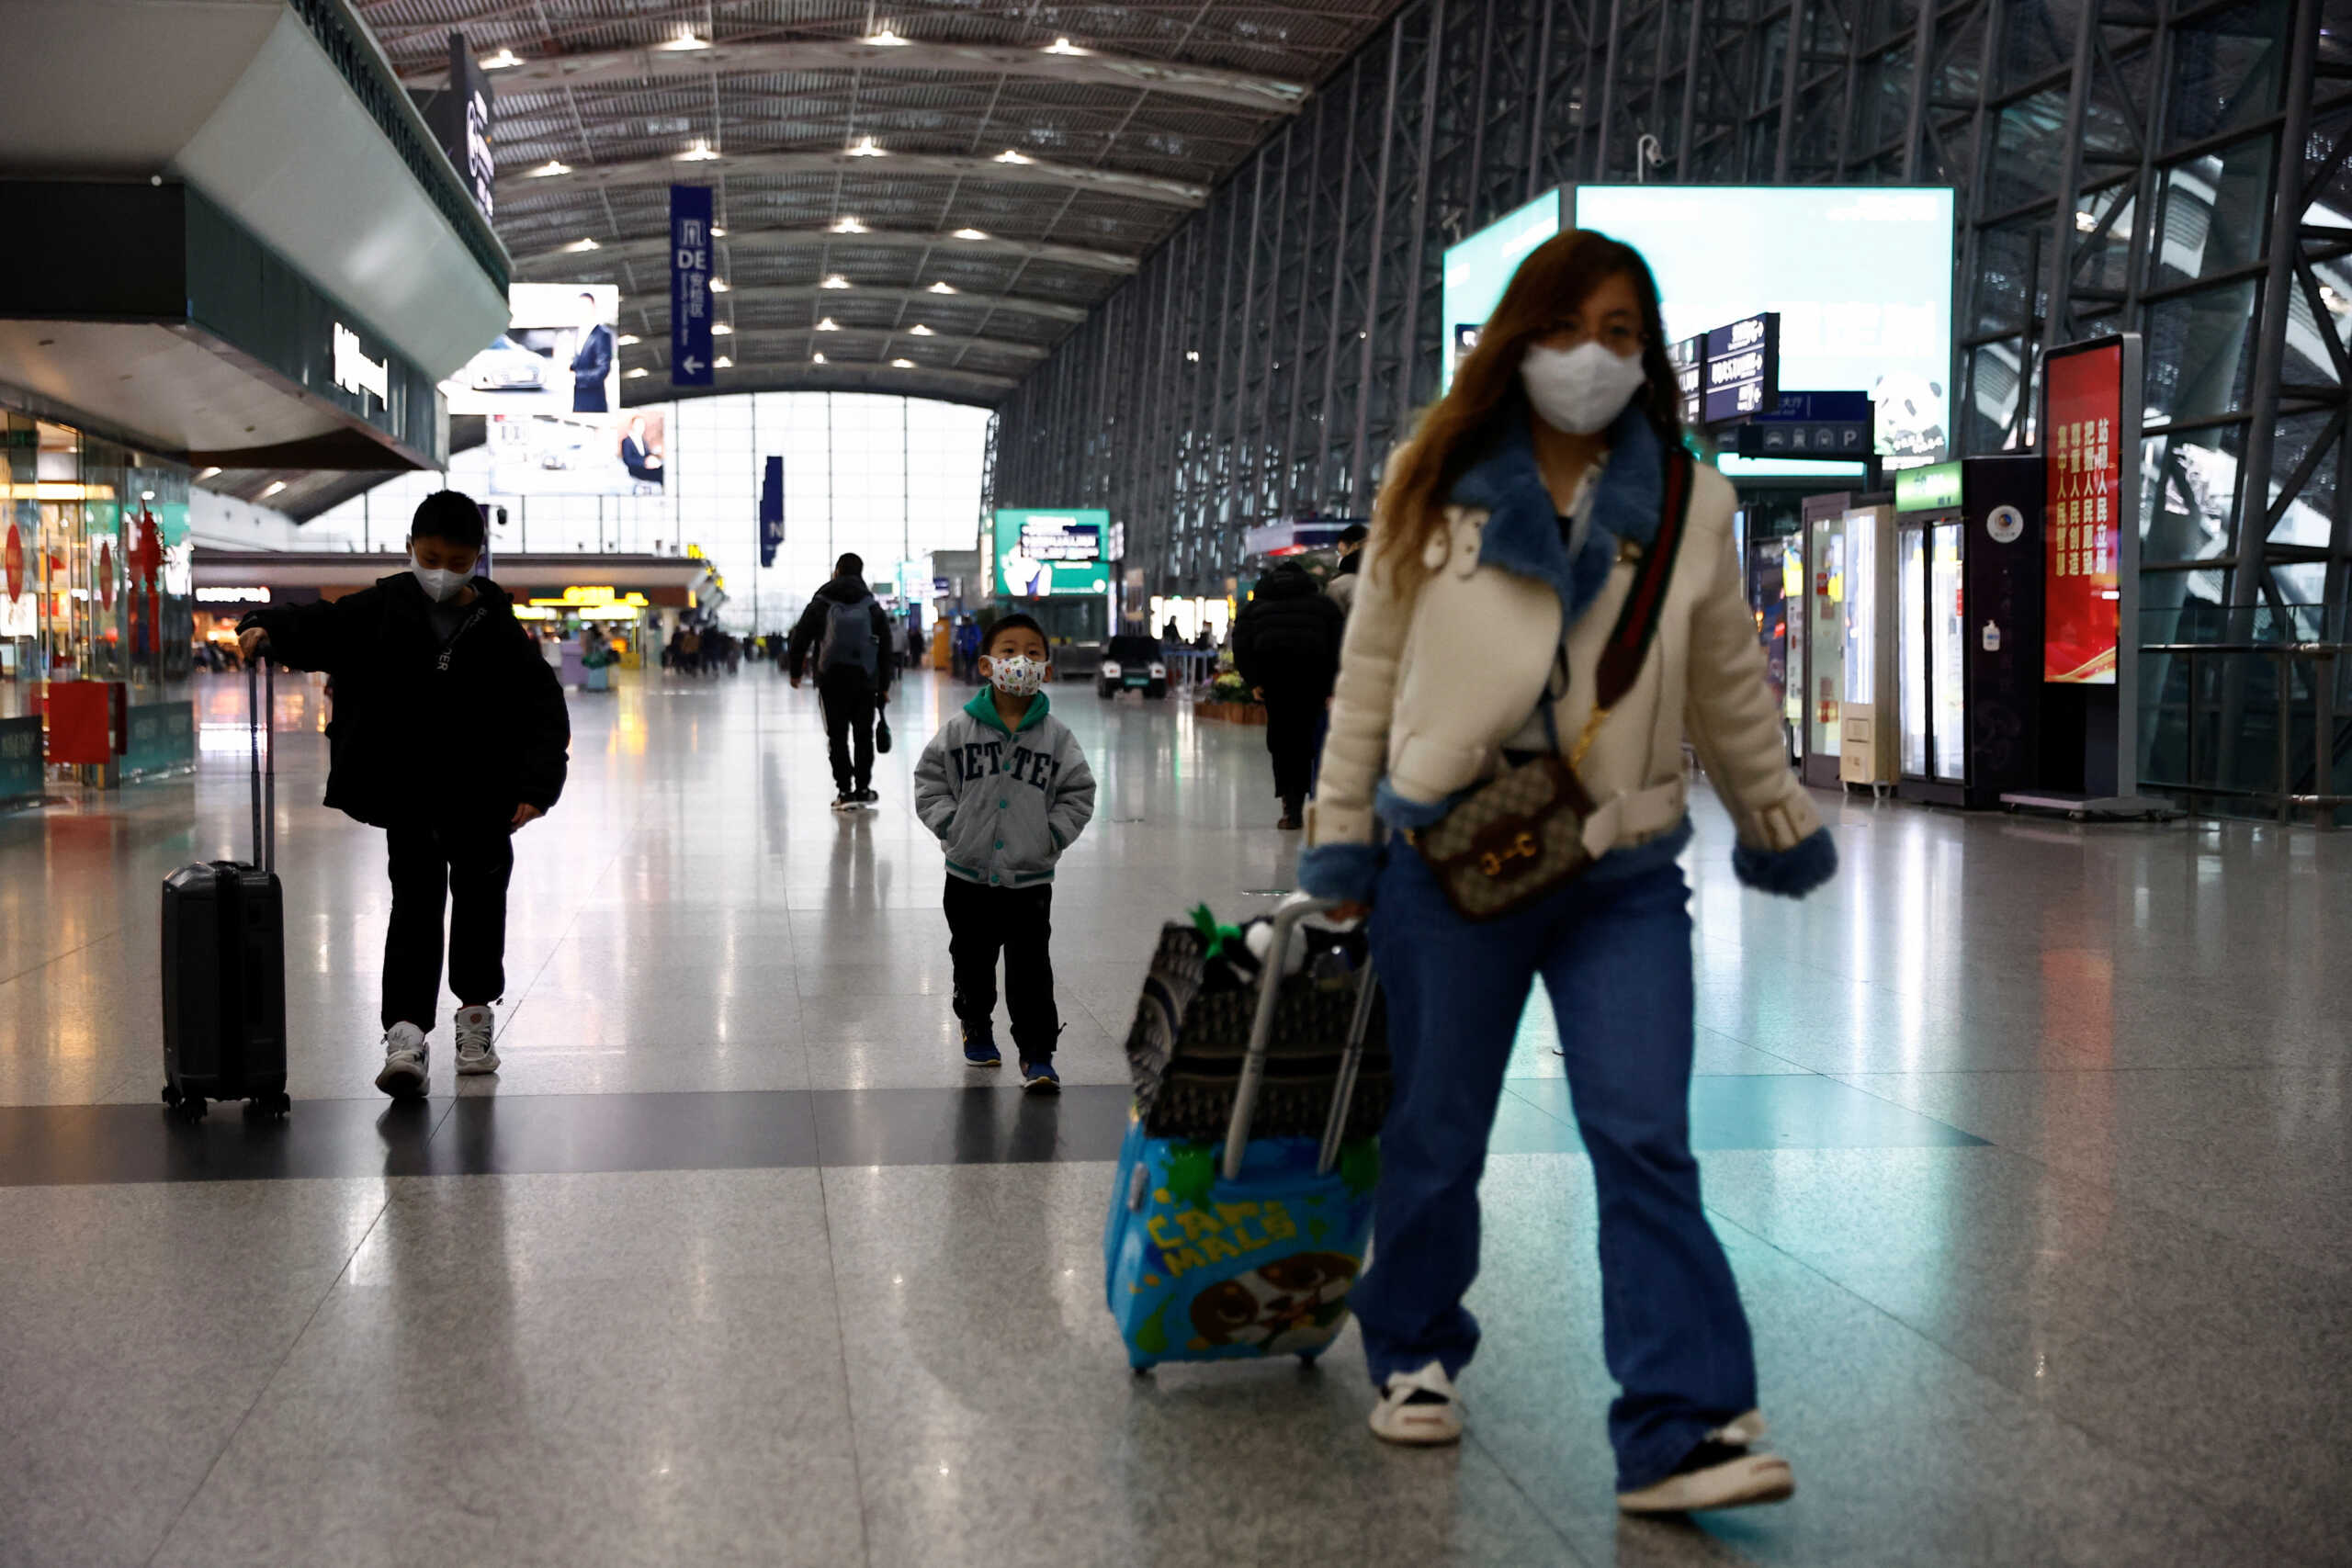 Κορονοϊός: Με αρνητικό τεστ και σύσταση για μάσκα οι ταξιδιώτες από την Κίνα στην Ελλάδα – Όλα τα μέτρα που ανακοίνωσε ο ΕΟΔΥ